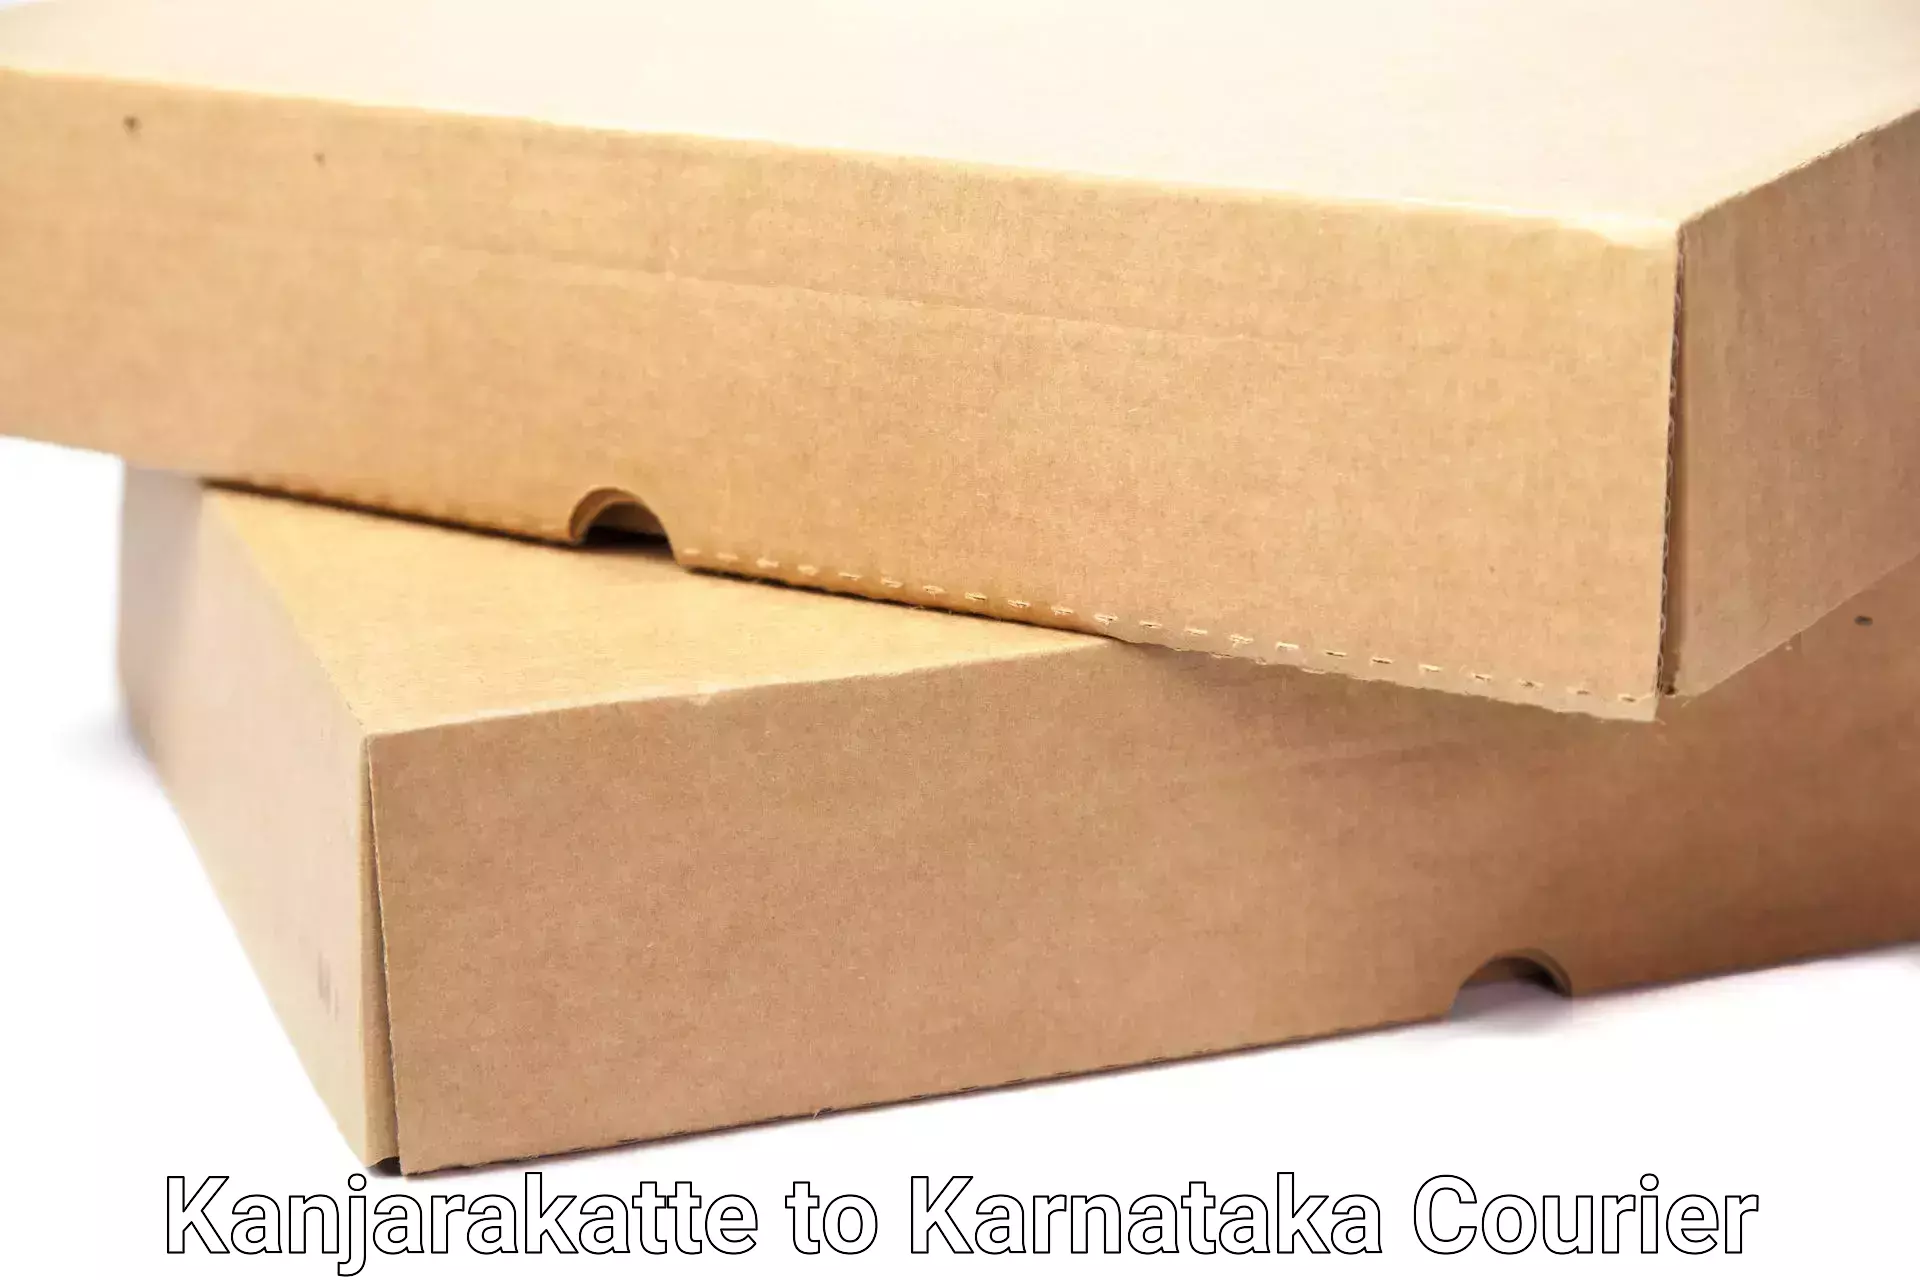 Furniture moving experts Kanjarakatte to Ranebennur